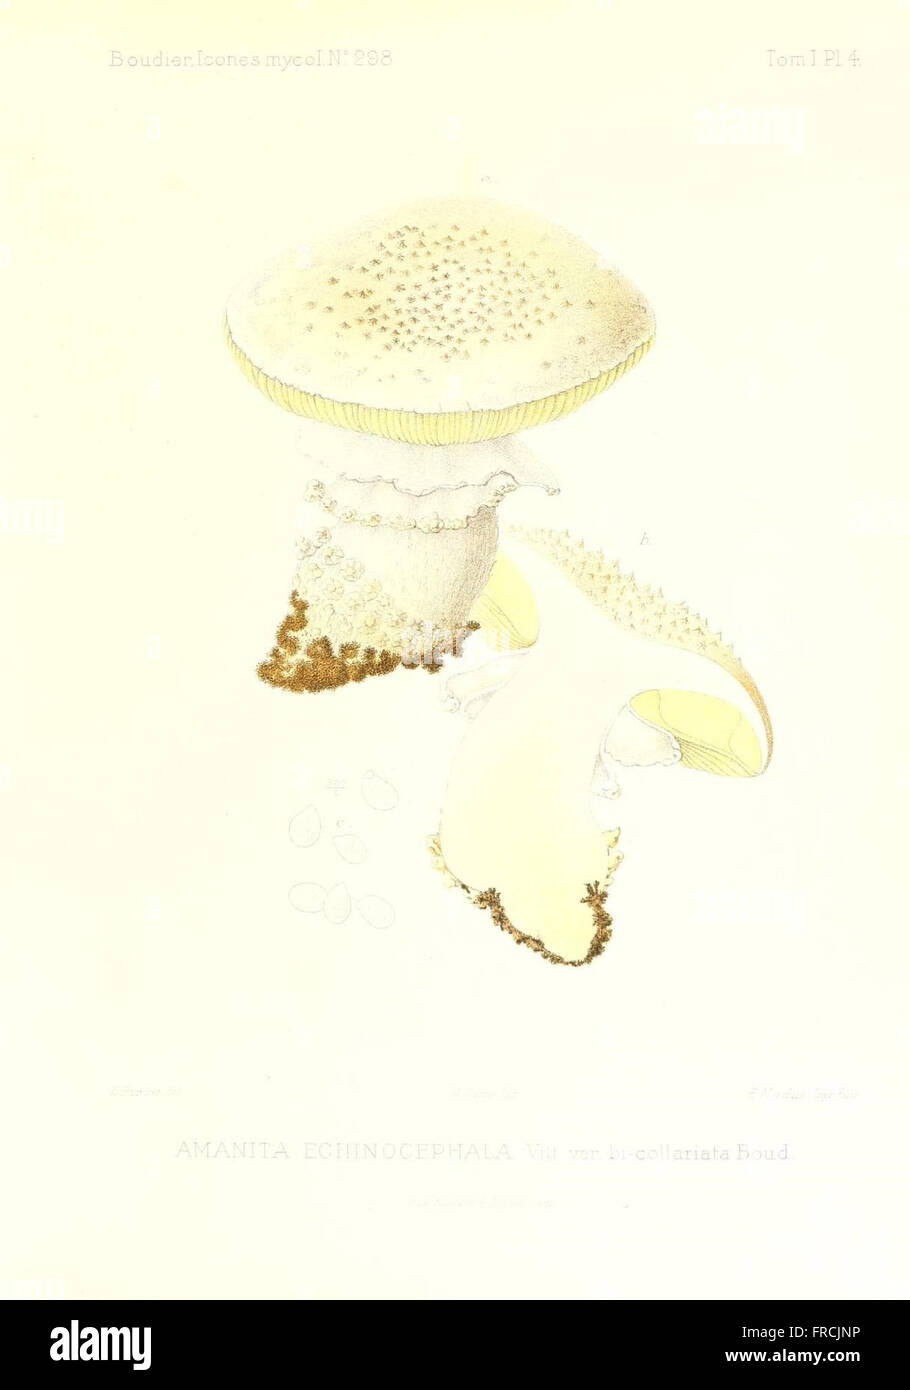 Icones mycologicC3A6, ou Iconographie des champignons de France principalement Discomycetes (Pl. 4) Stock Photo